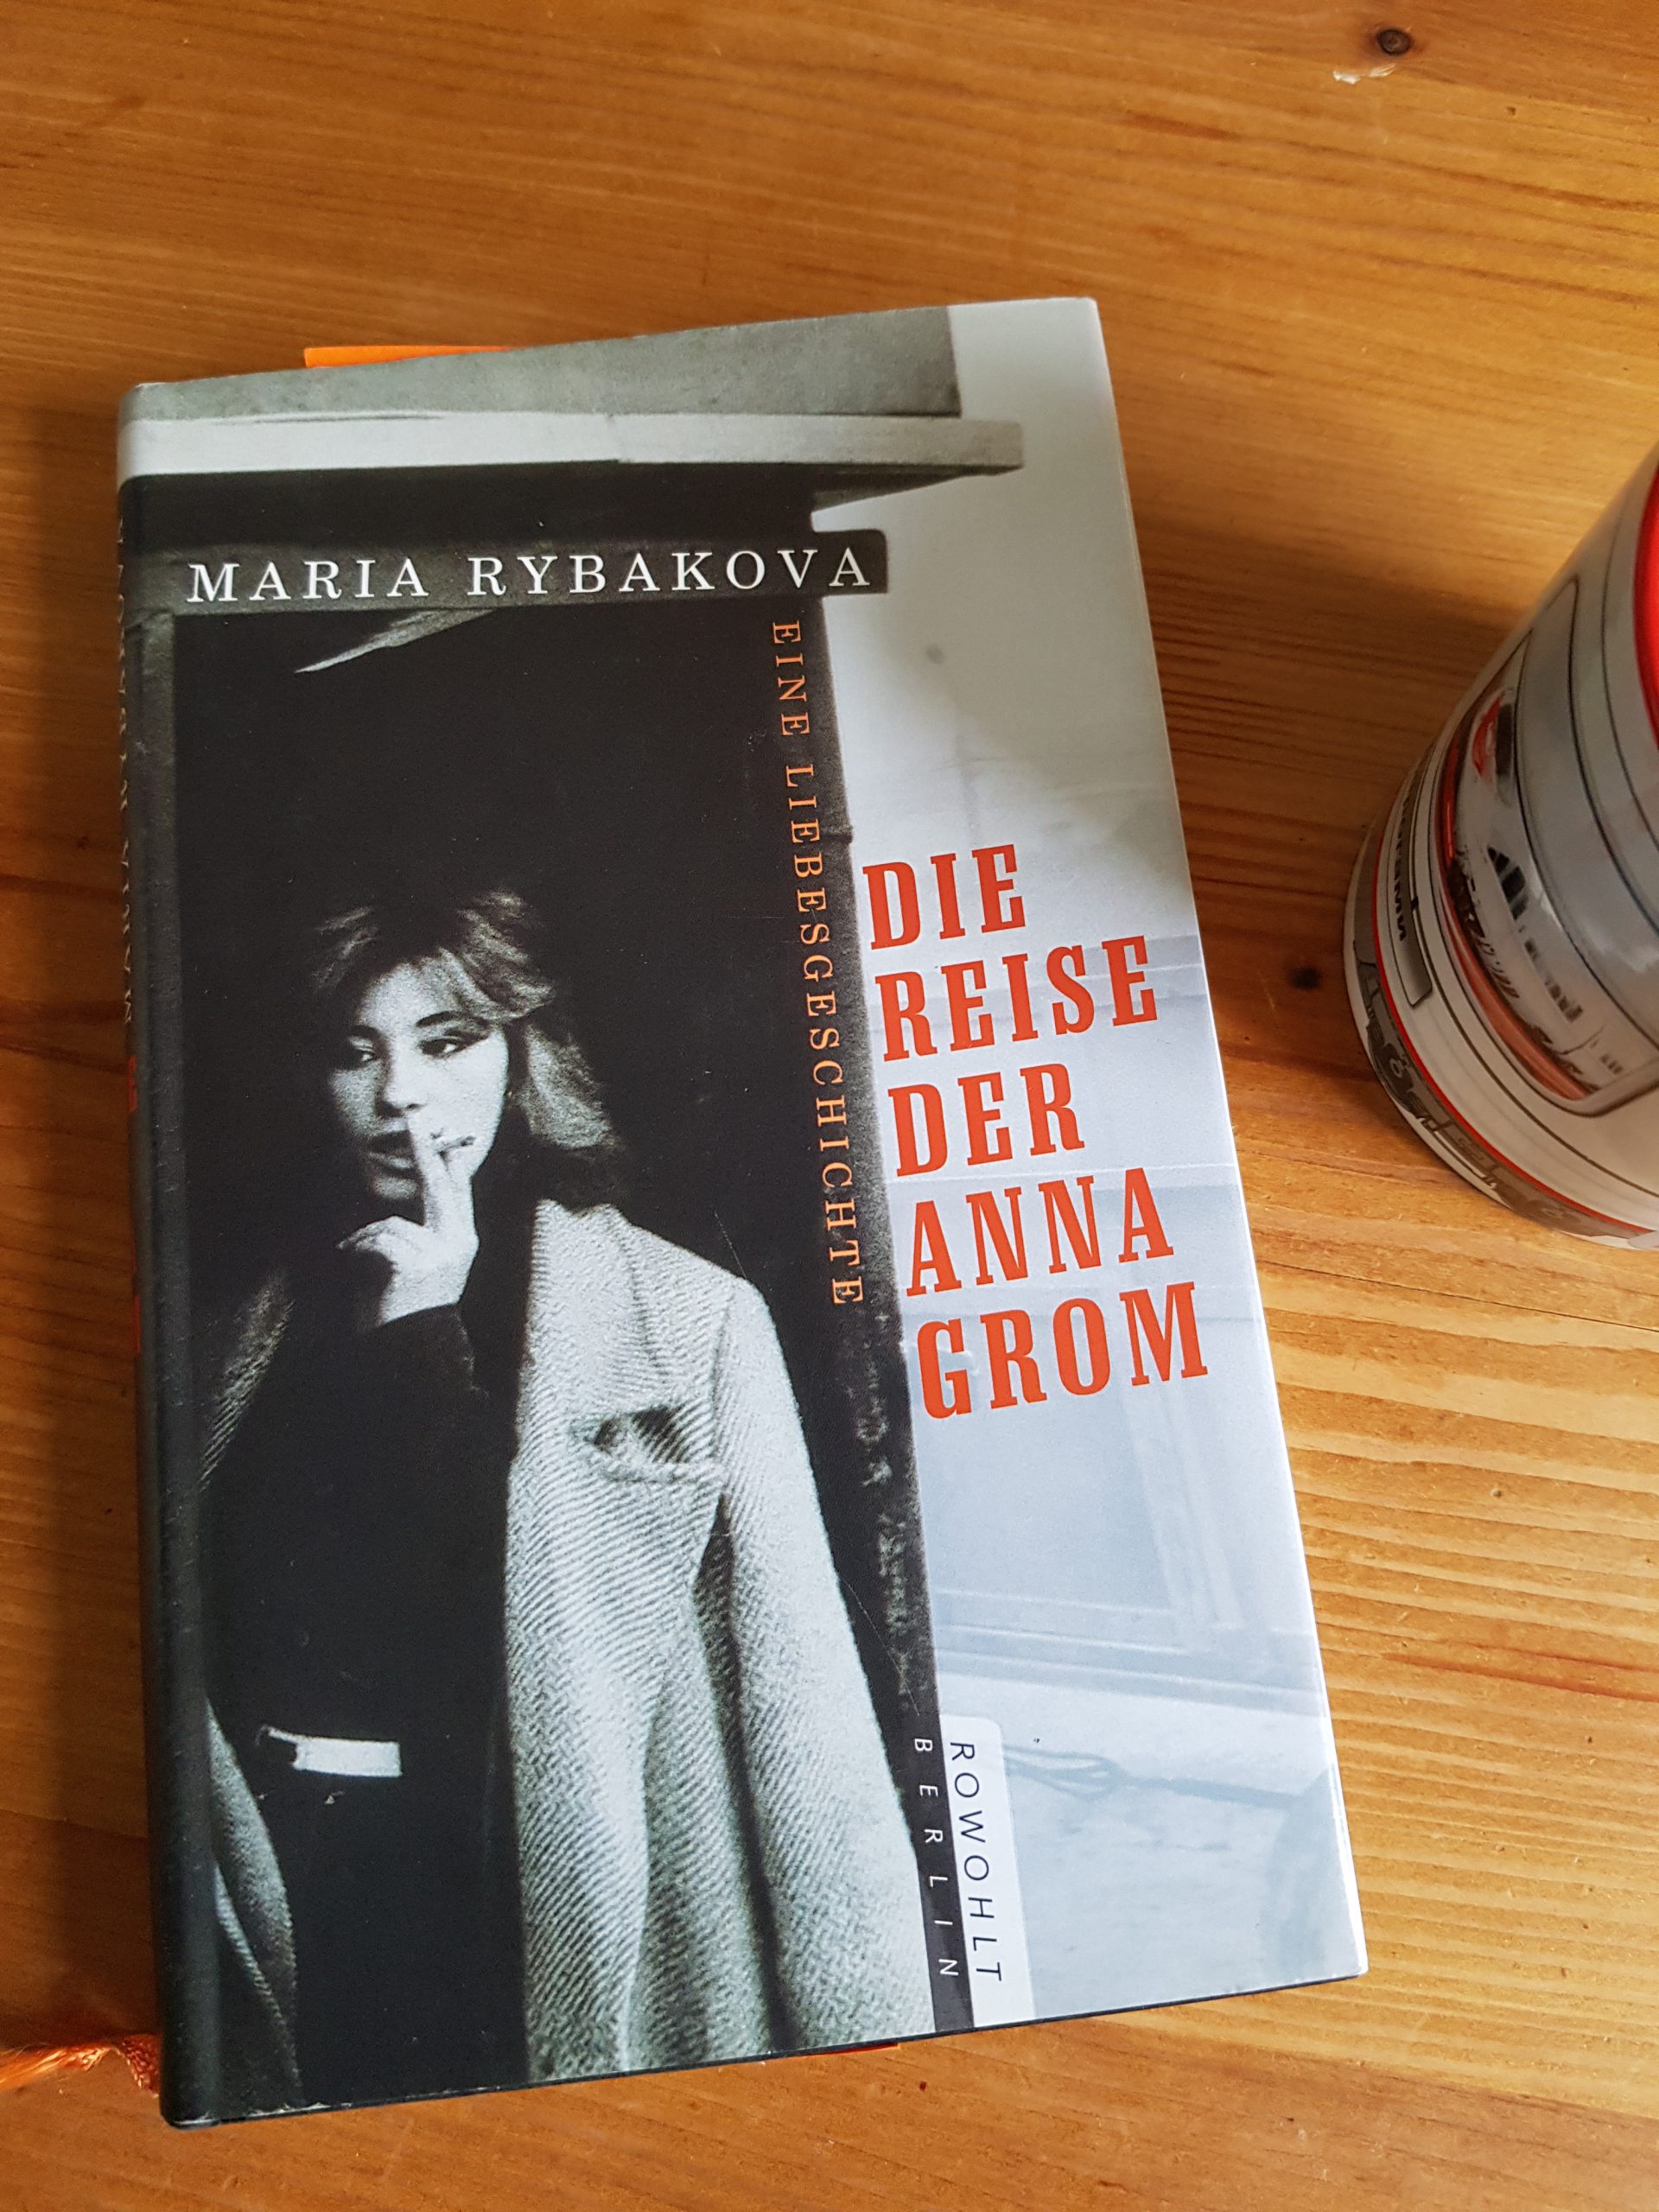 Maria Rybakova: Die Reise der Anna Grom